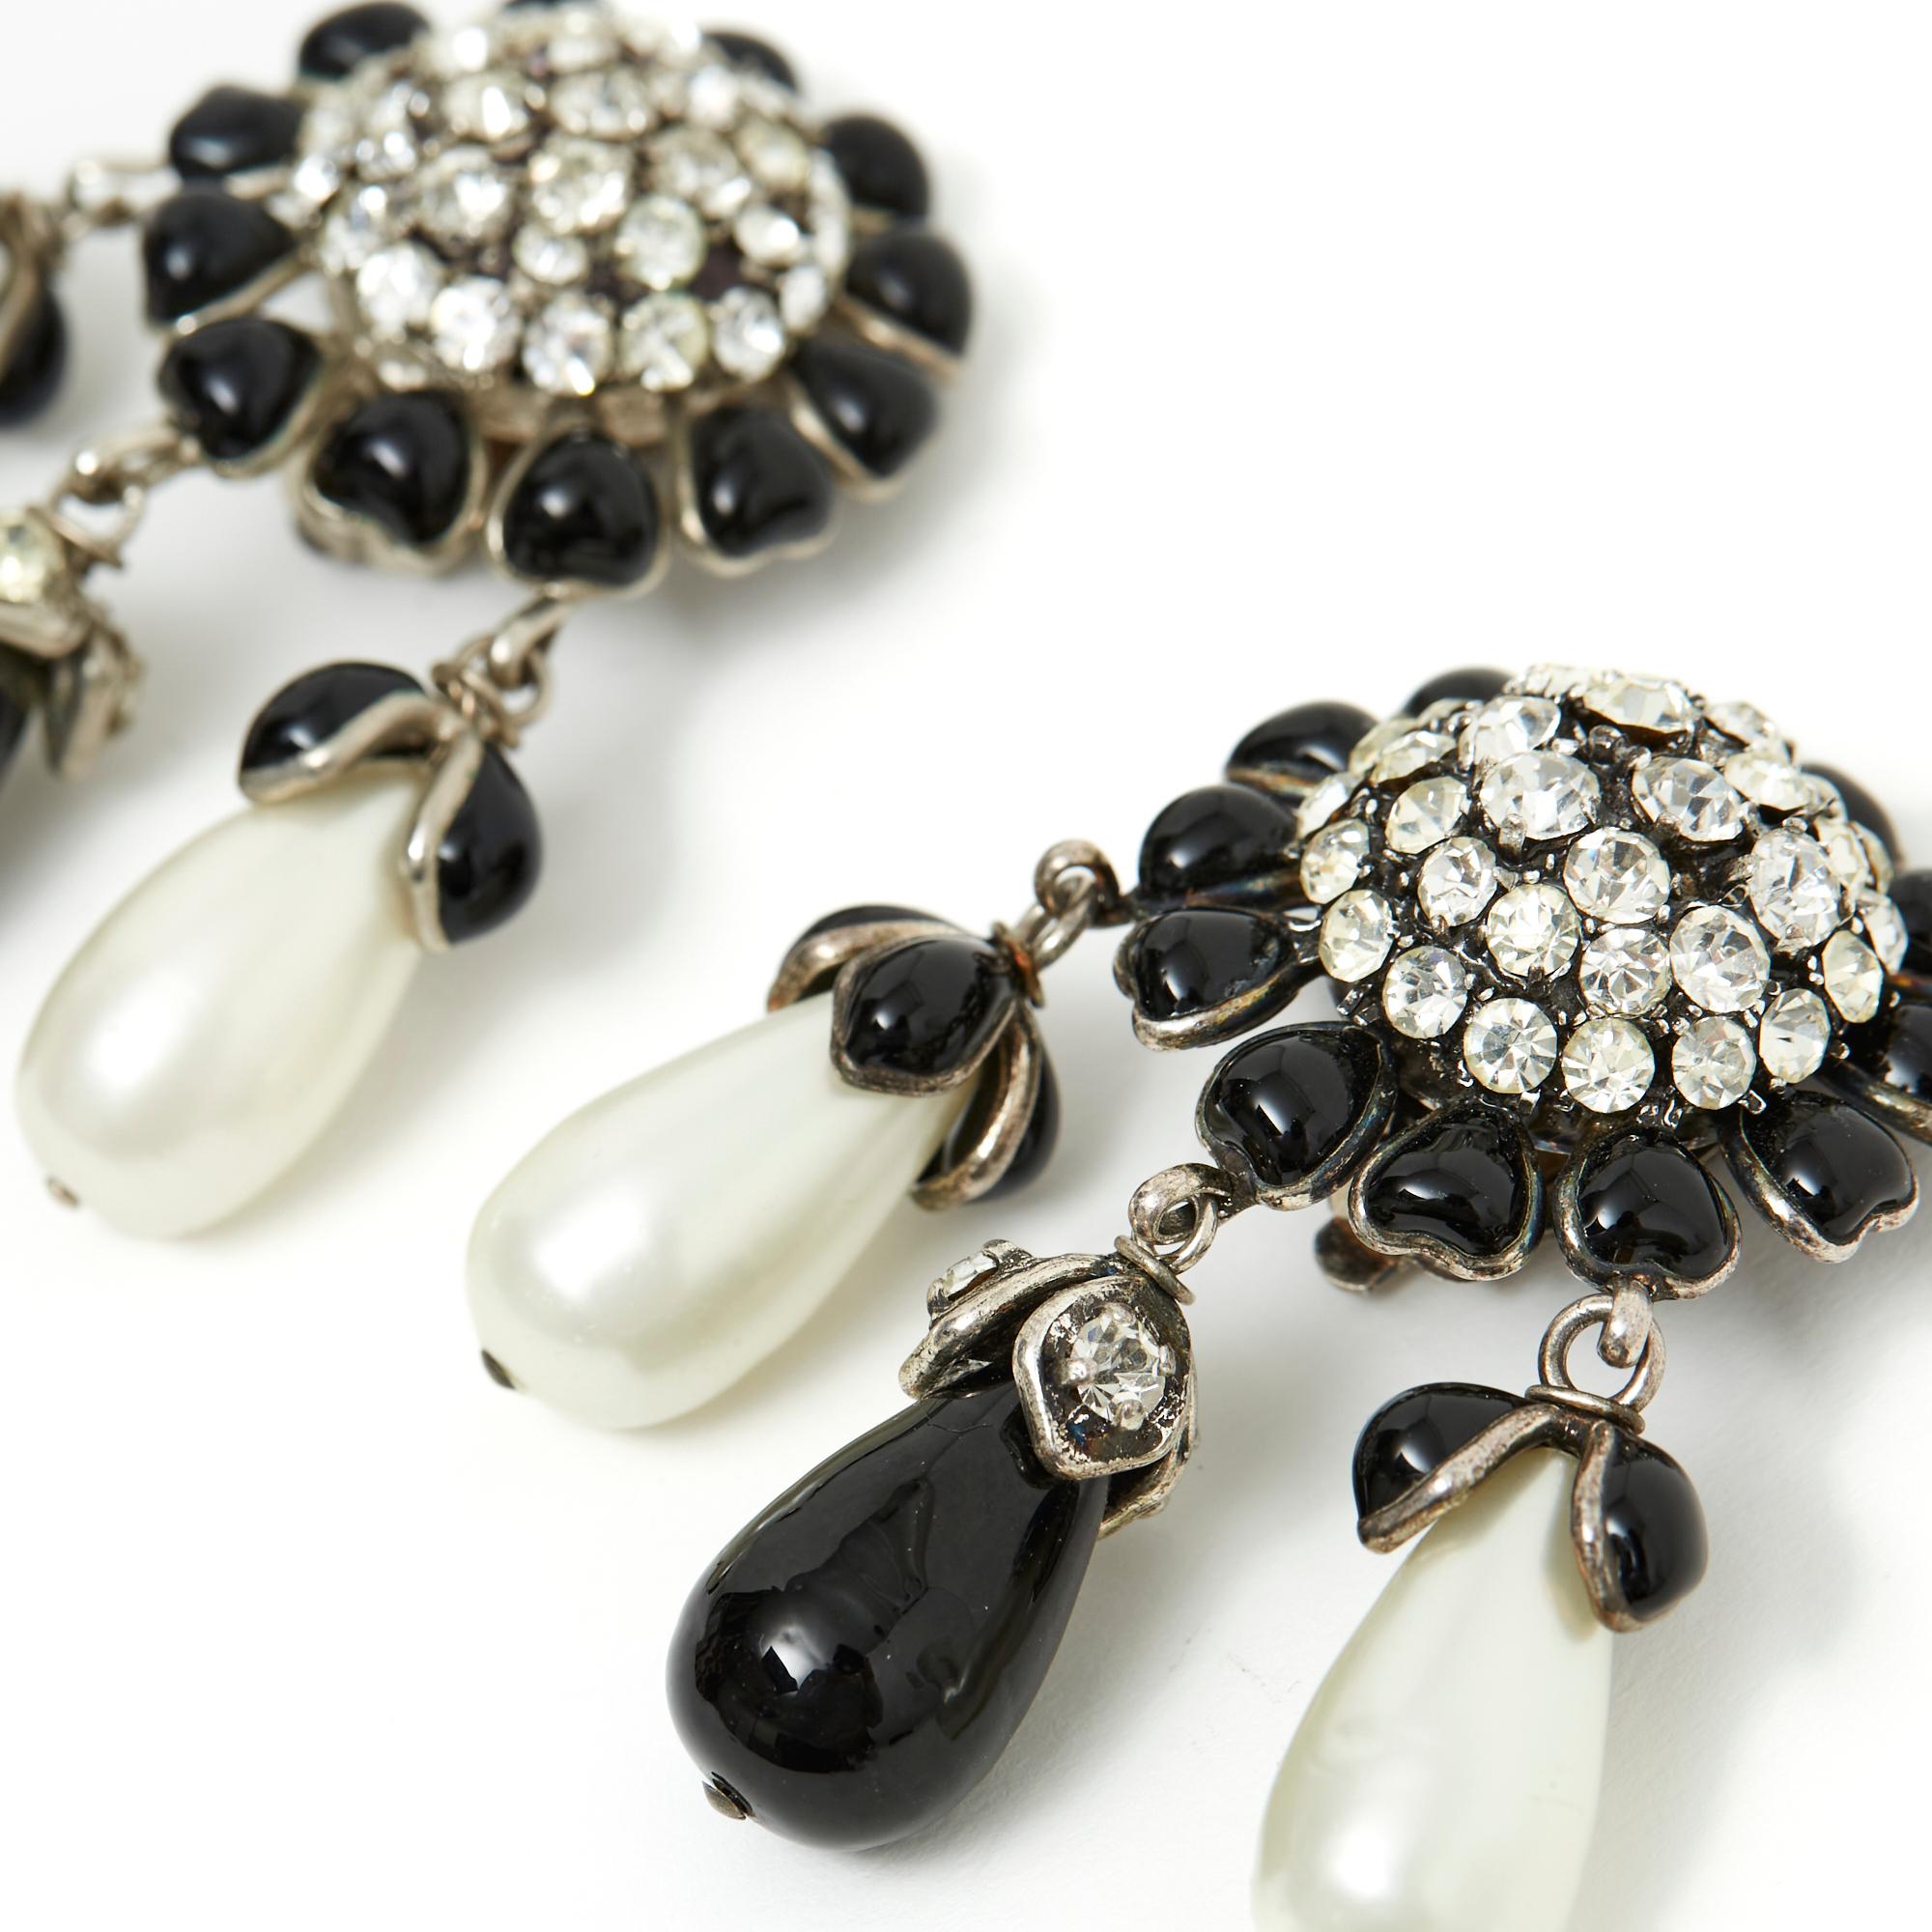 Chanel Haute Couture-Ohrringe aus silbernem Metall, schwarze Cabochons aus Glaspaste in einem Kreis um eine weiße Strasskuppel, Tropfenperlenanhänger aus schwarzer oder weißer Perlenglaspaste. Breite 4 cm x Höhe 5,9 cm. Die Ohrringe sind